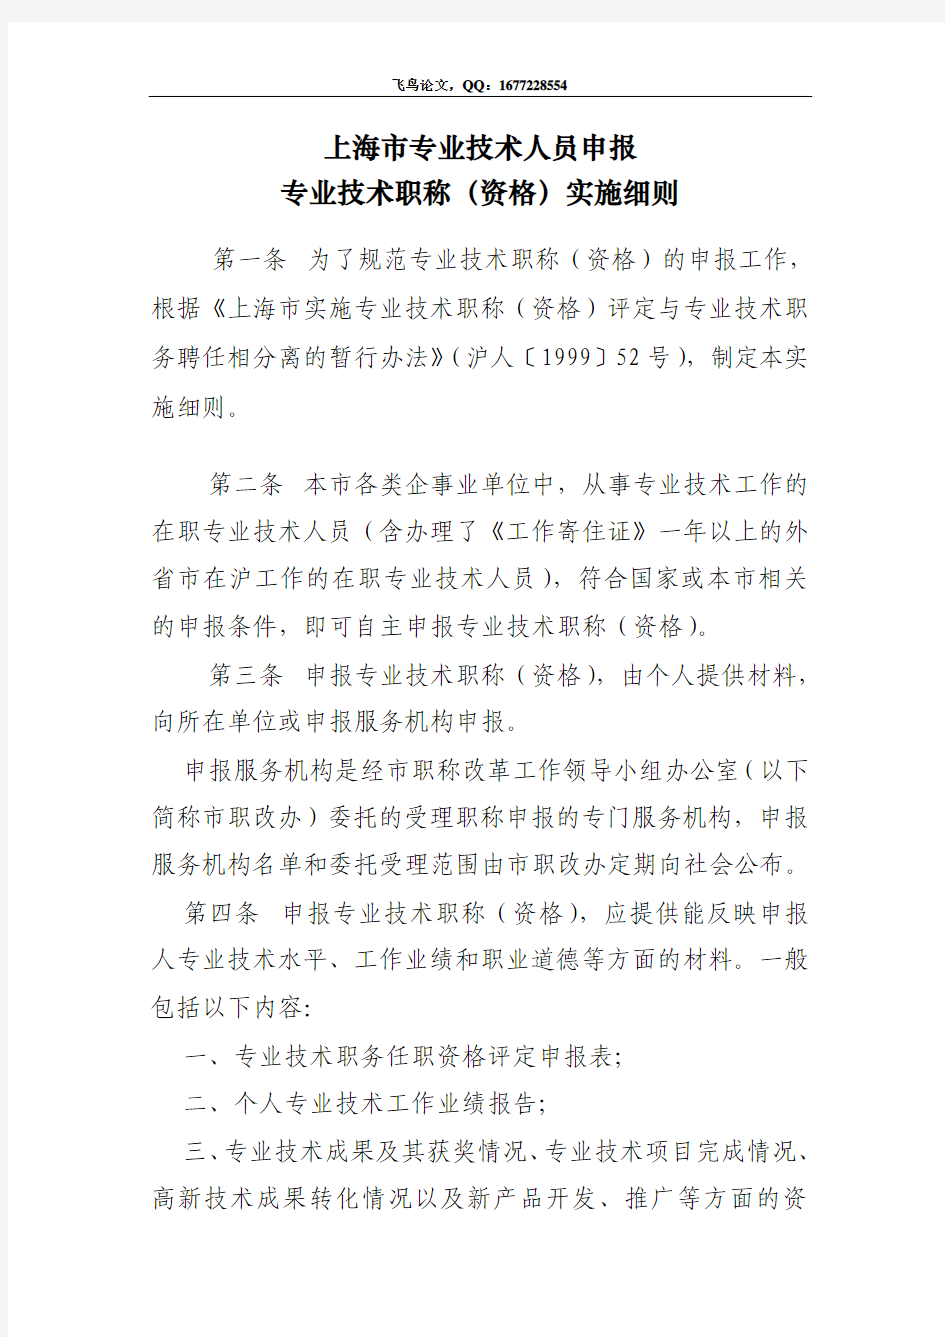 上海市人事局关于印发上海市专业技术职称(资格)申报、评审(审定)、考试和专业技术职务聘任等文件的通知